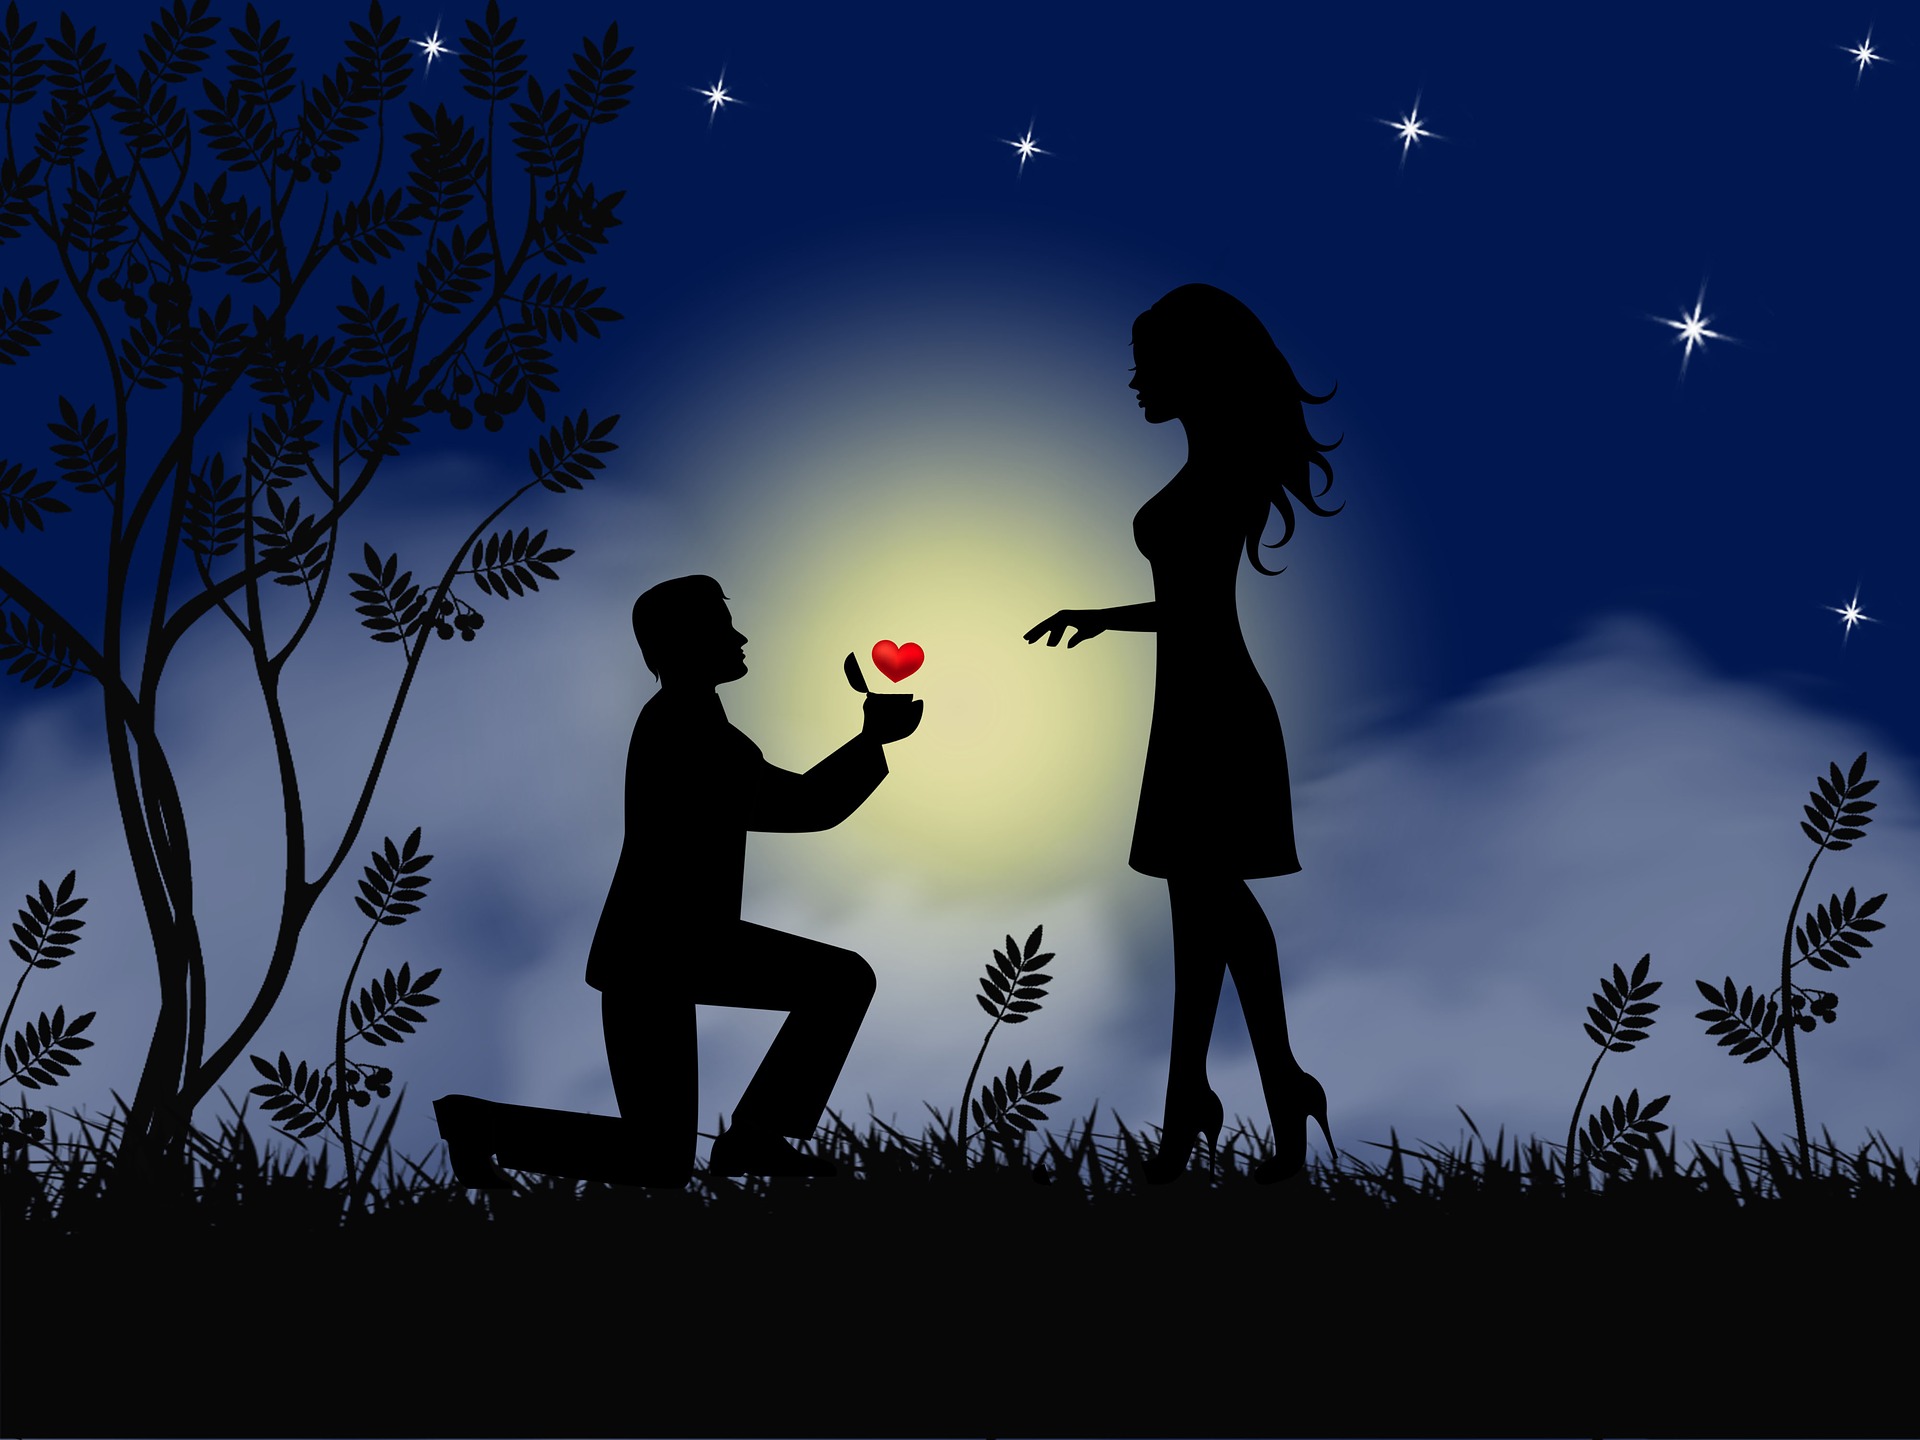 Na obrázku žádá muž ženu o ruku pod noční oblohou.